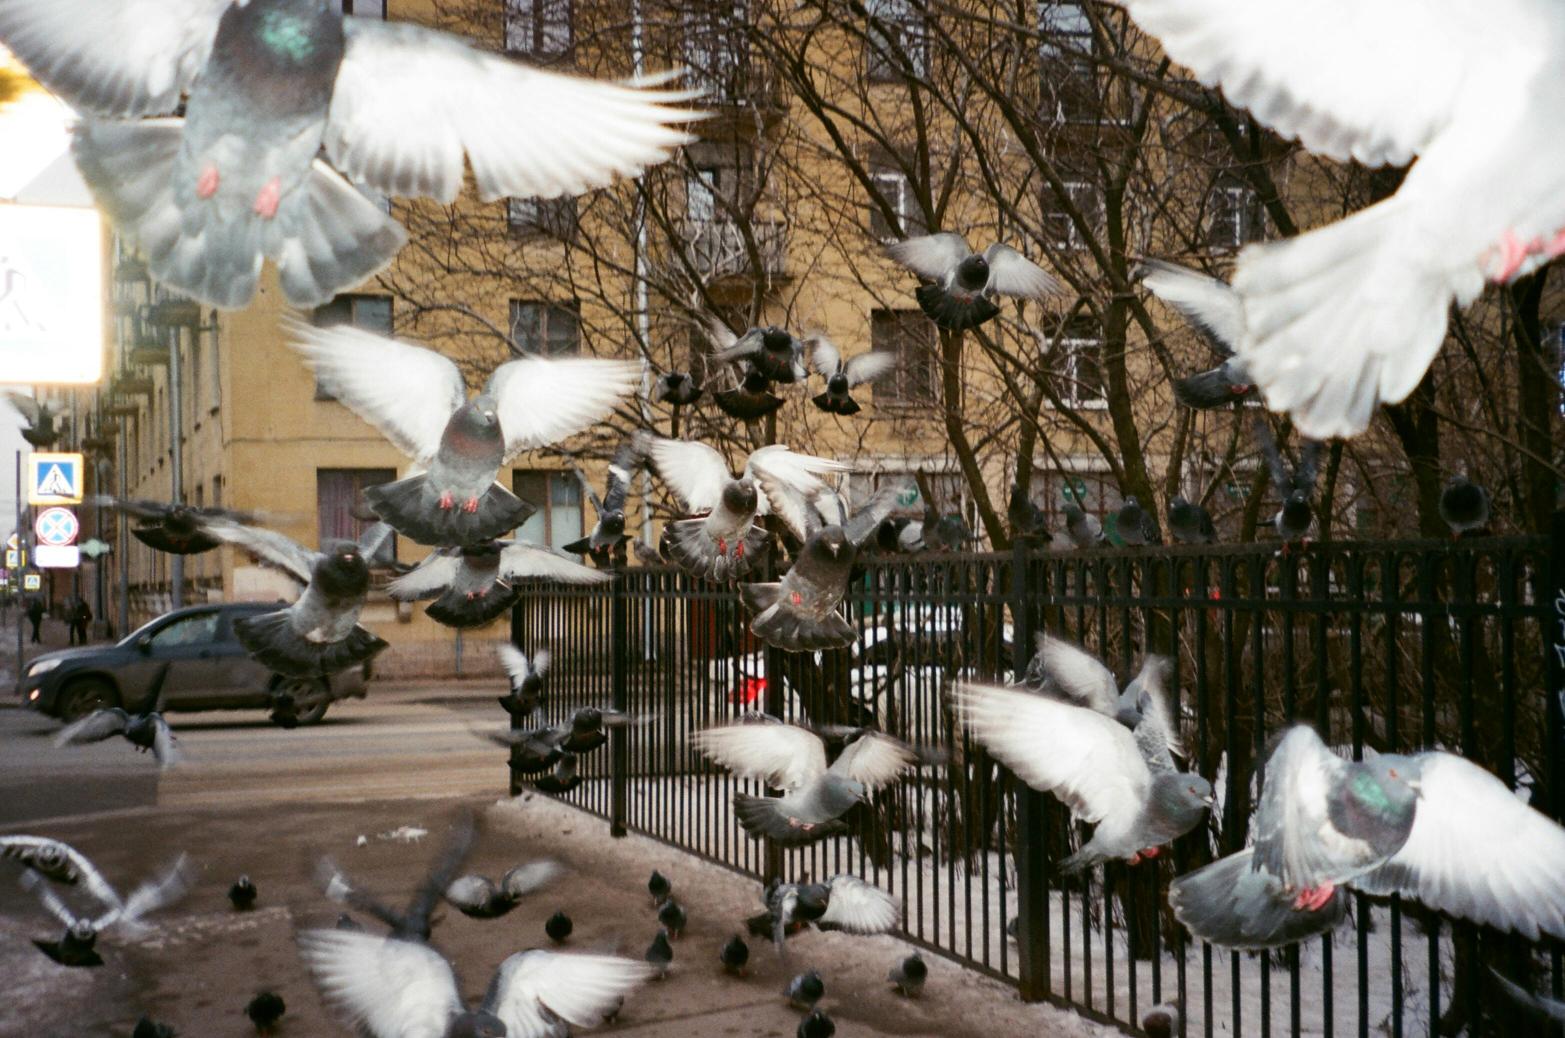 Ptaki opolszczyzny – skrzydlaci mieszkańcy miasta i okolic